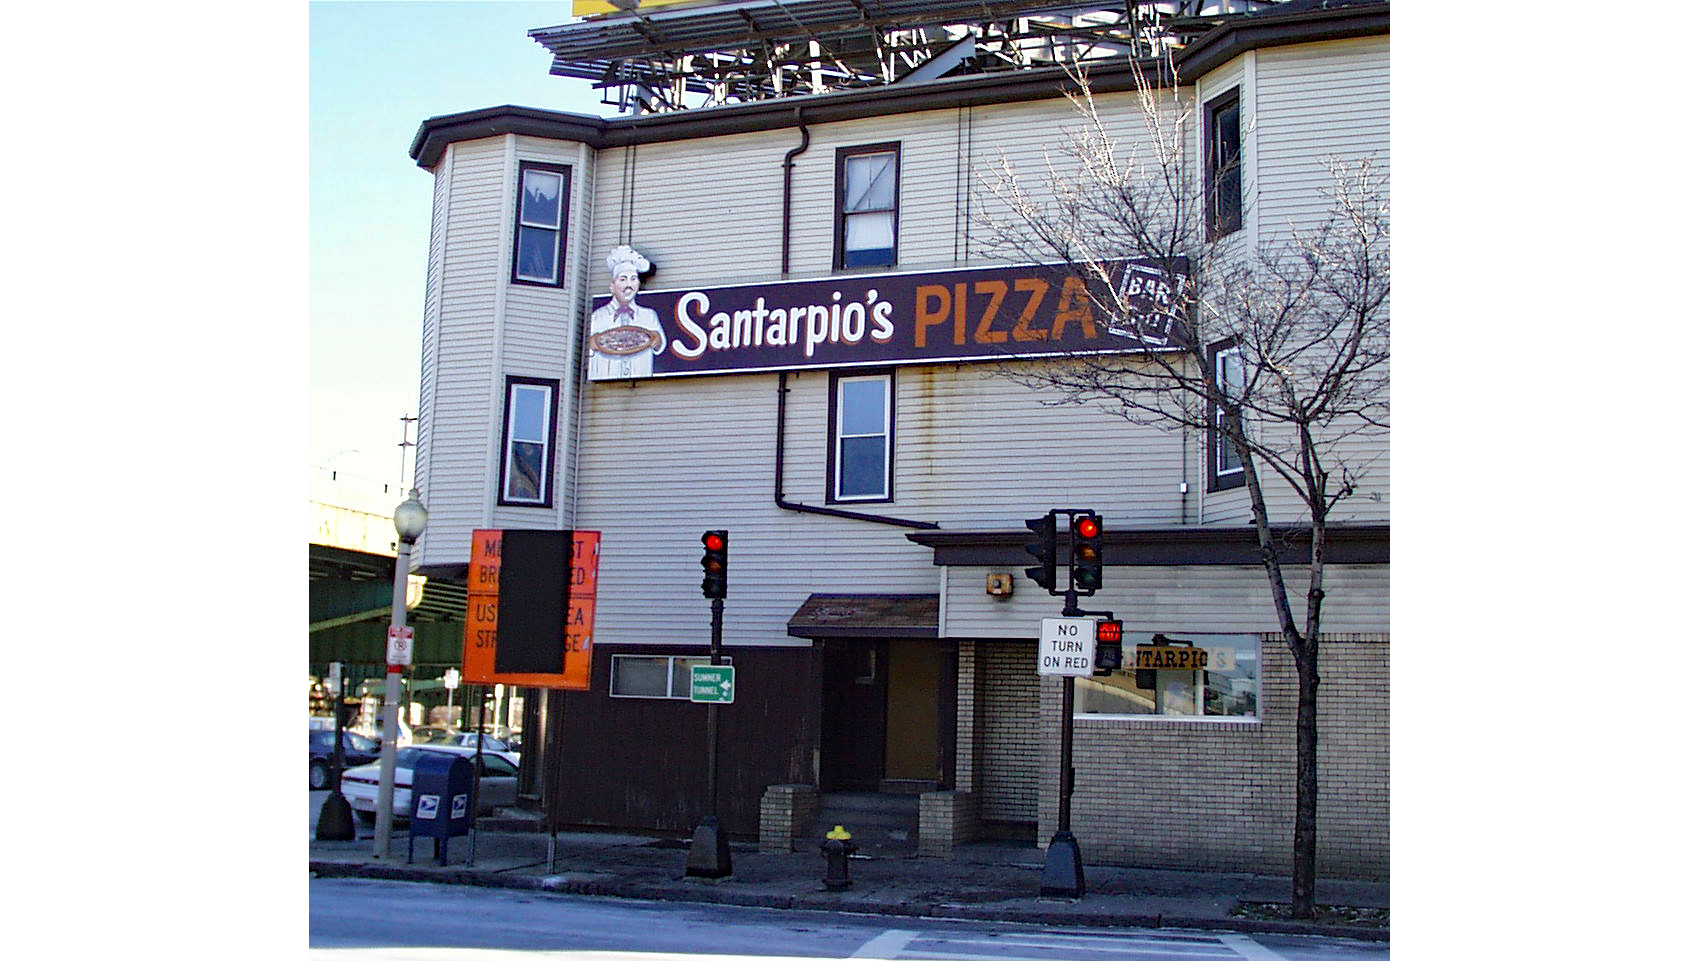 The exterior of Santarpio's Pizza in Boston, MA